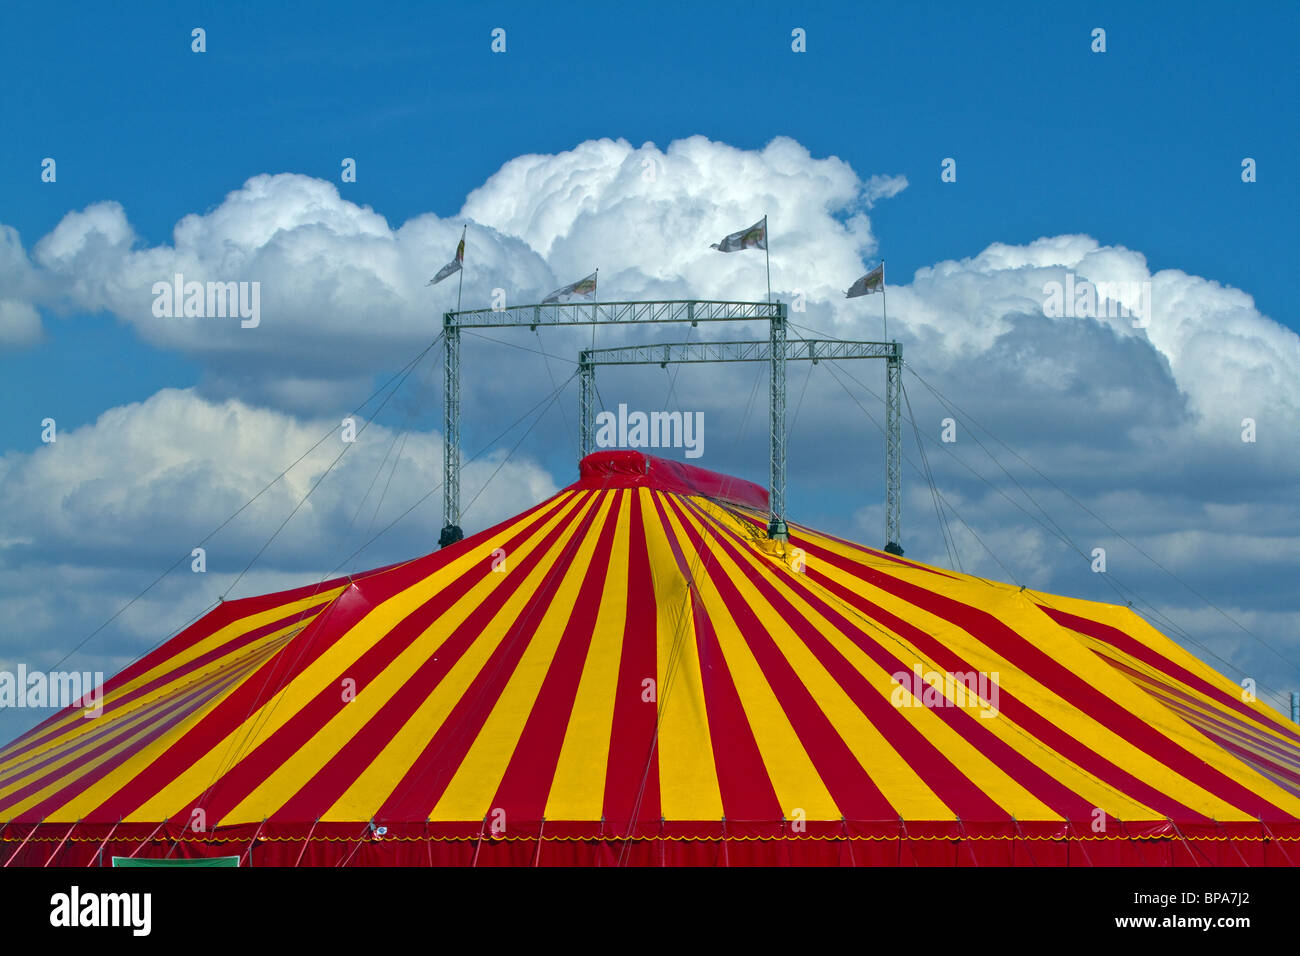 Carpa de circo de rayas contra un cielo azul con nubes esponjosas. Horizontal Foto de stock